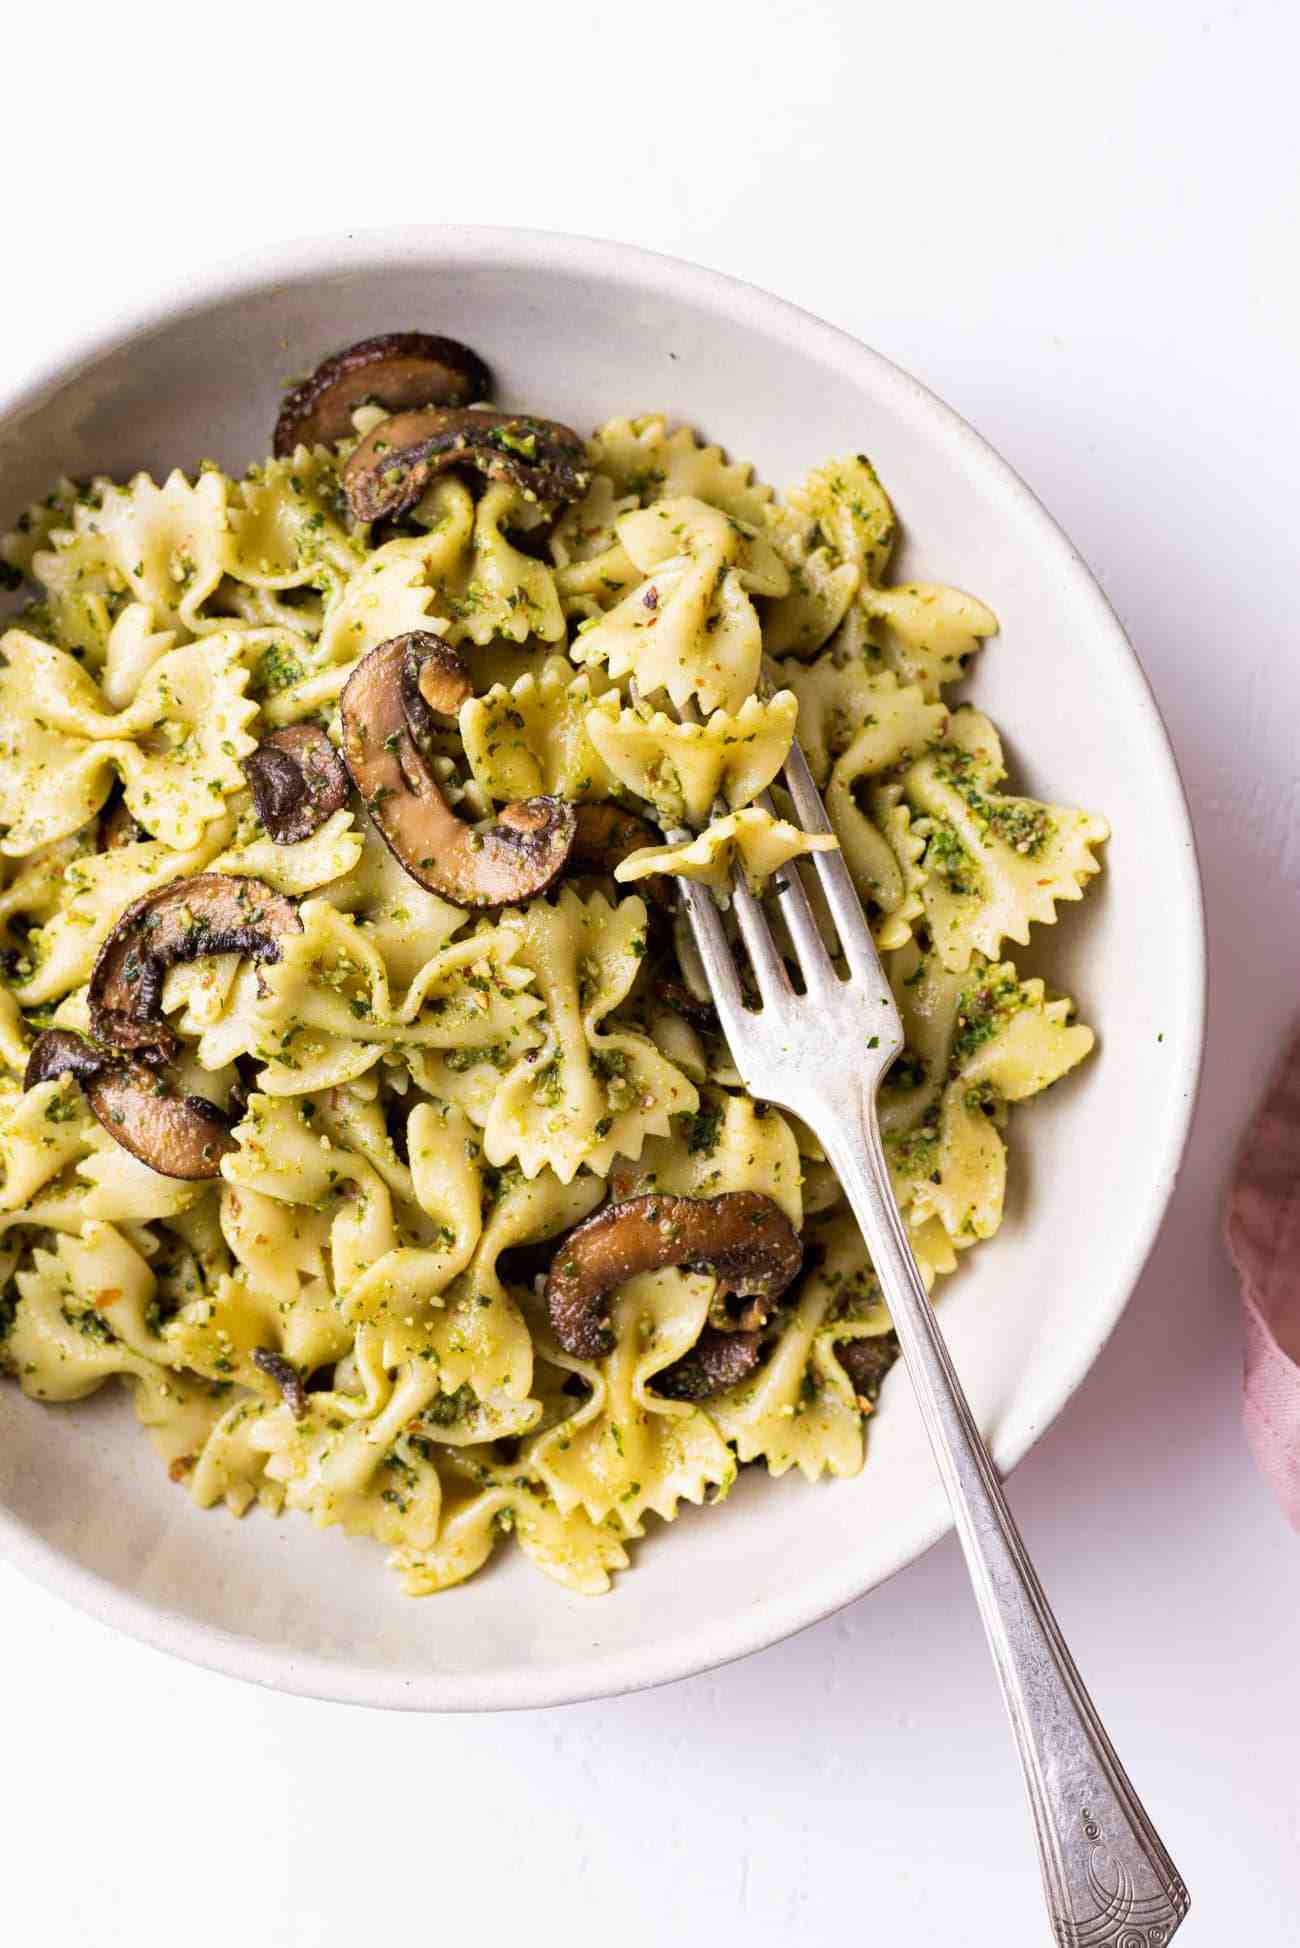 How to prepare pesto pasta with mushrooms